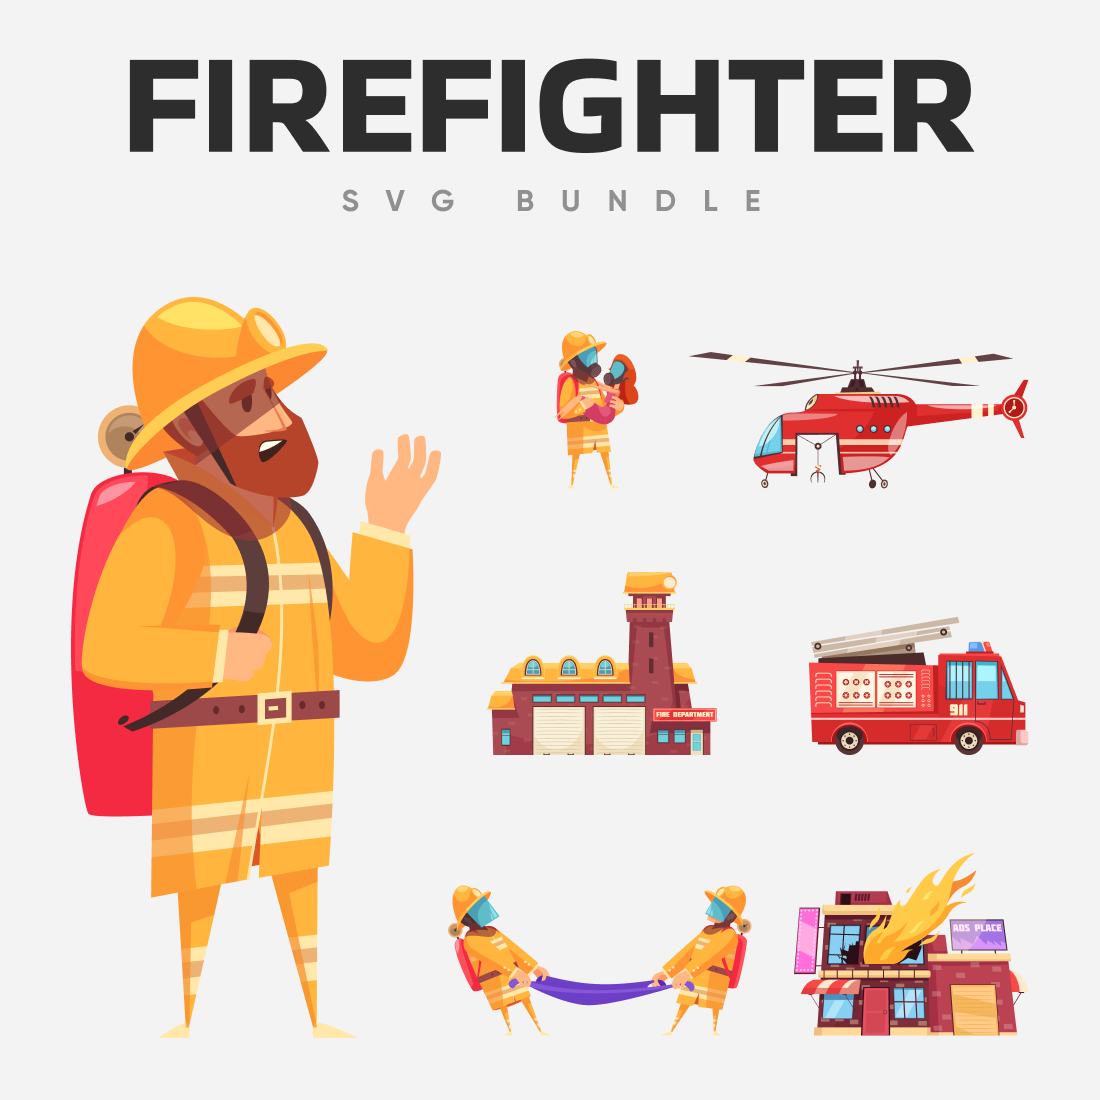 Interesting firefighter SVG bundle.